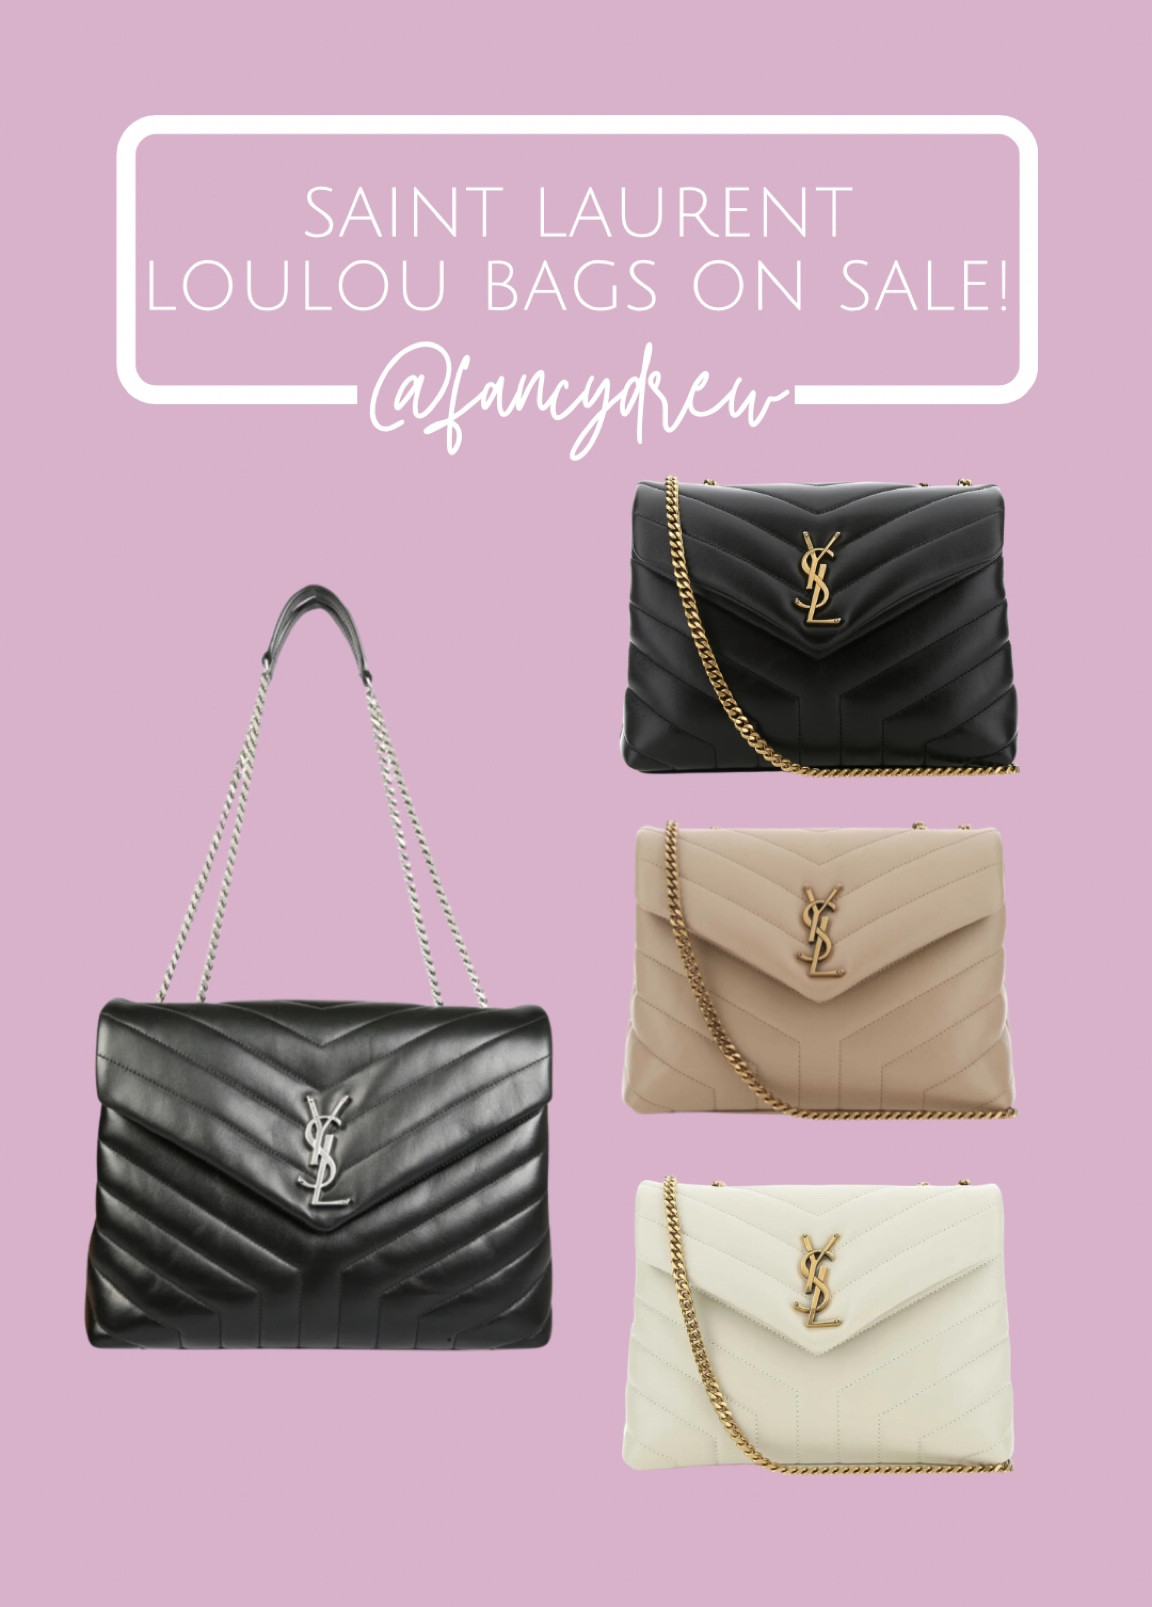 Saint Laurent Loulou Bags for sale